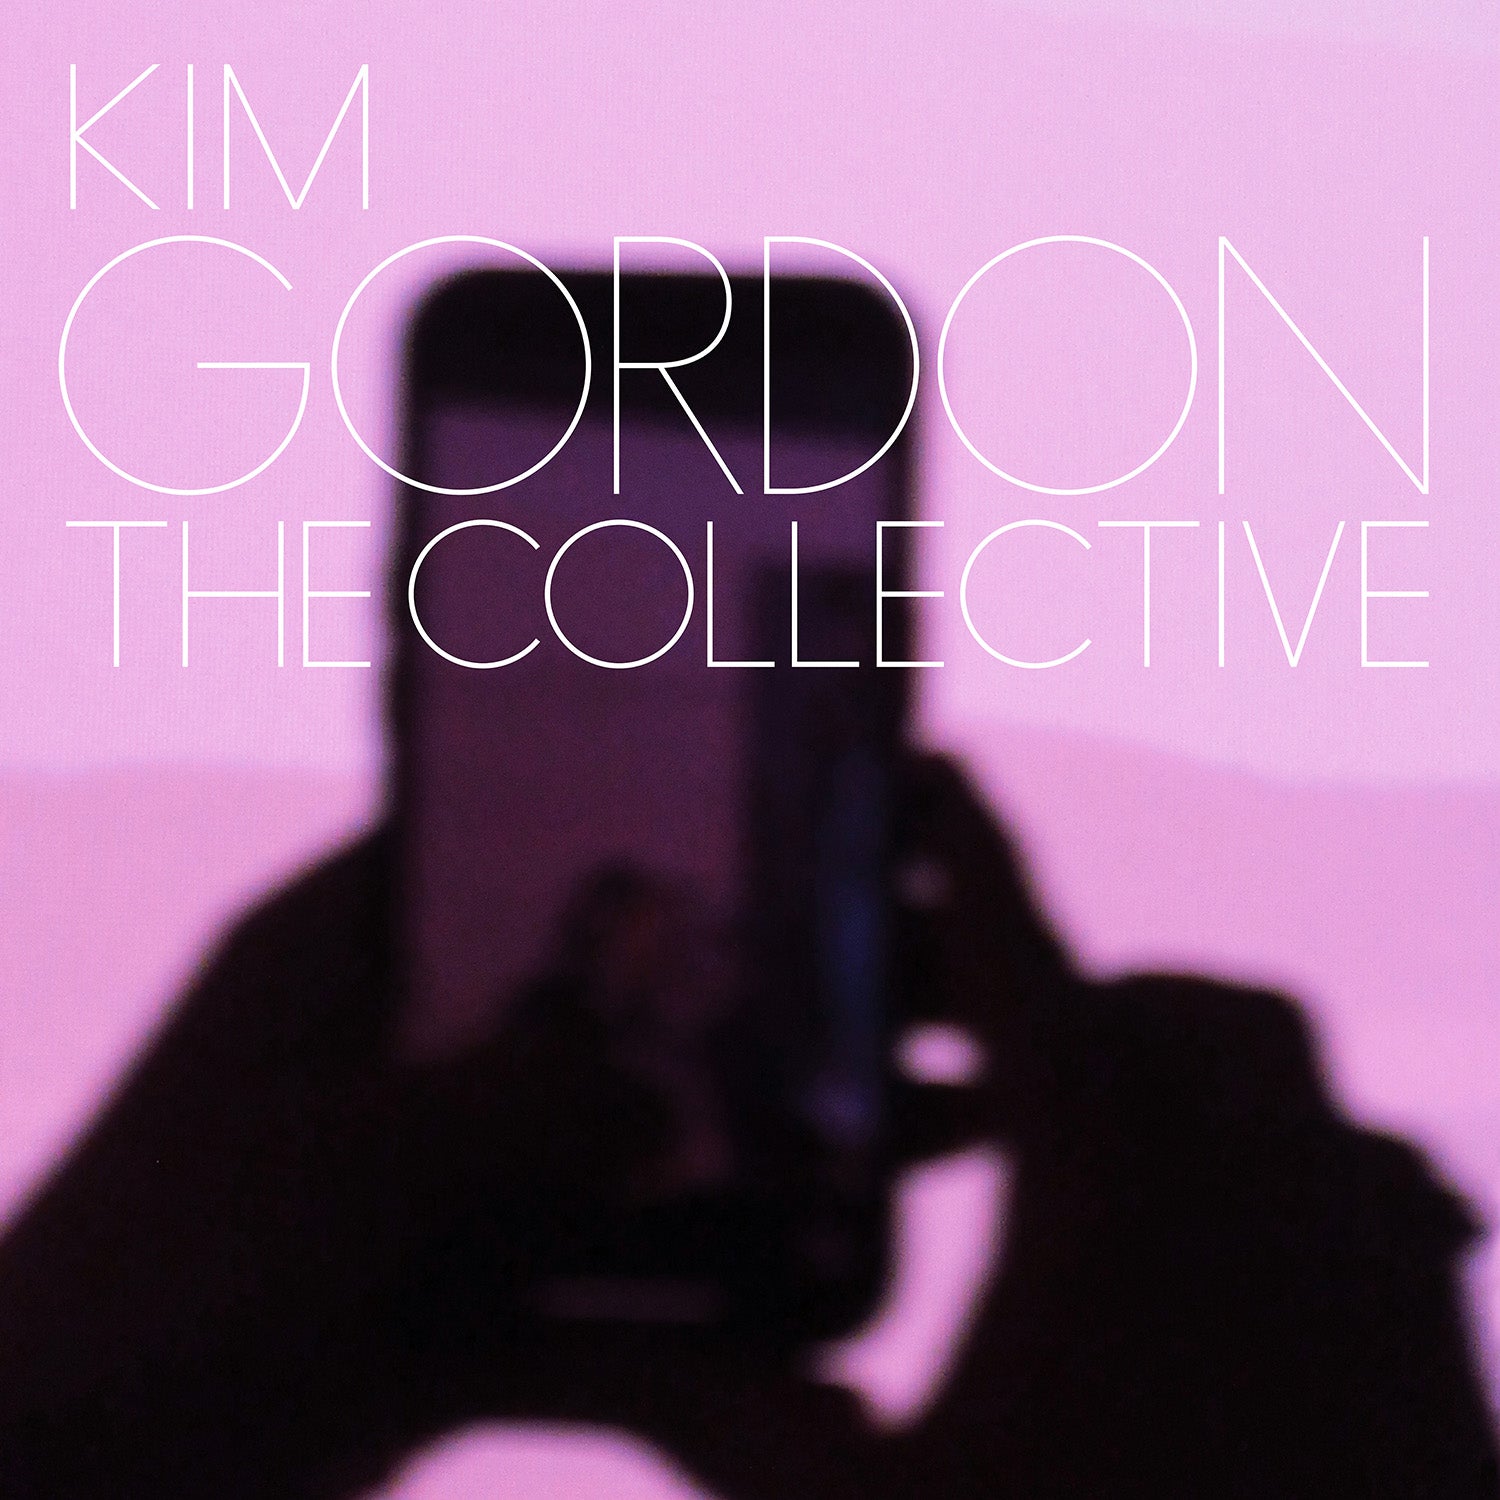 KIM GORDON - THE COLLECTIVE Vinyl LP